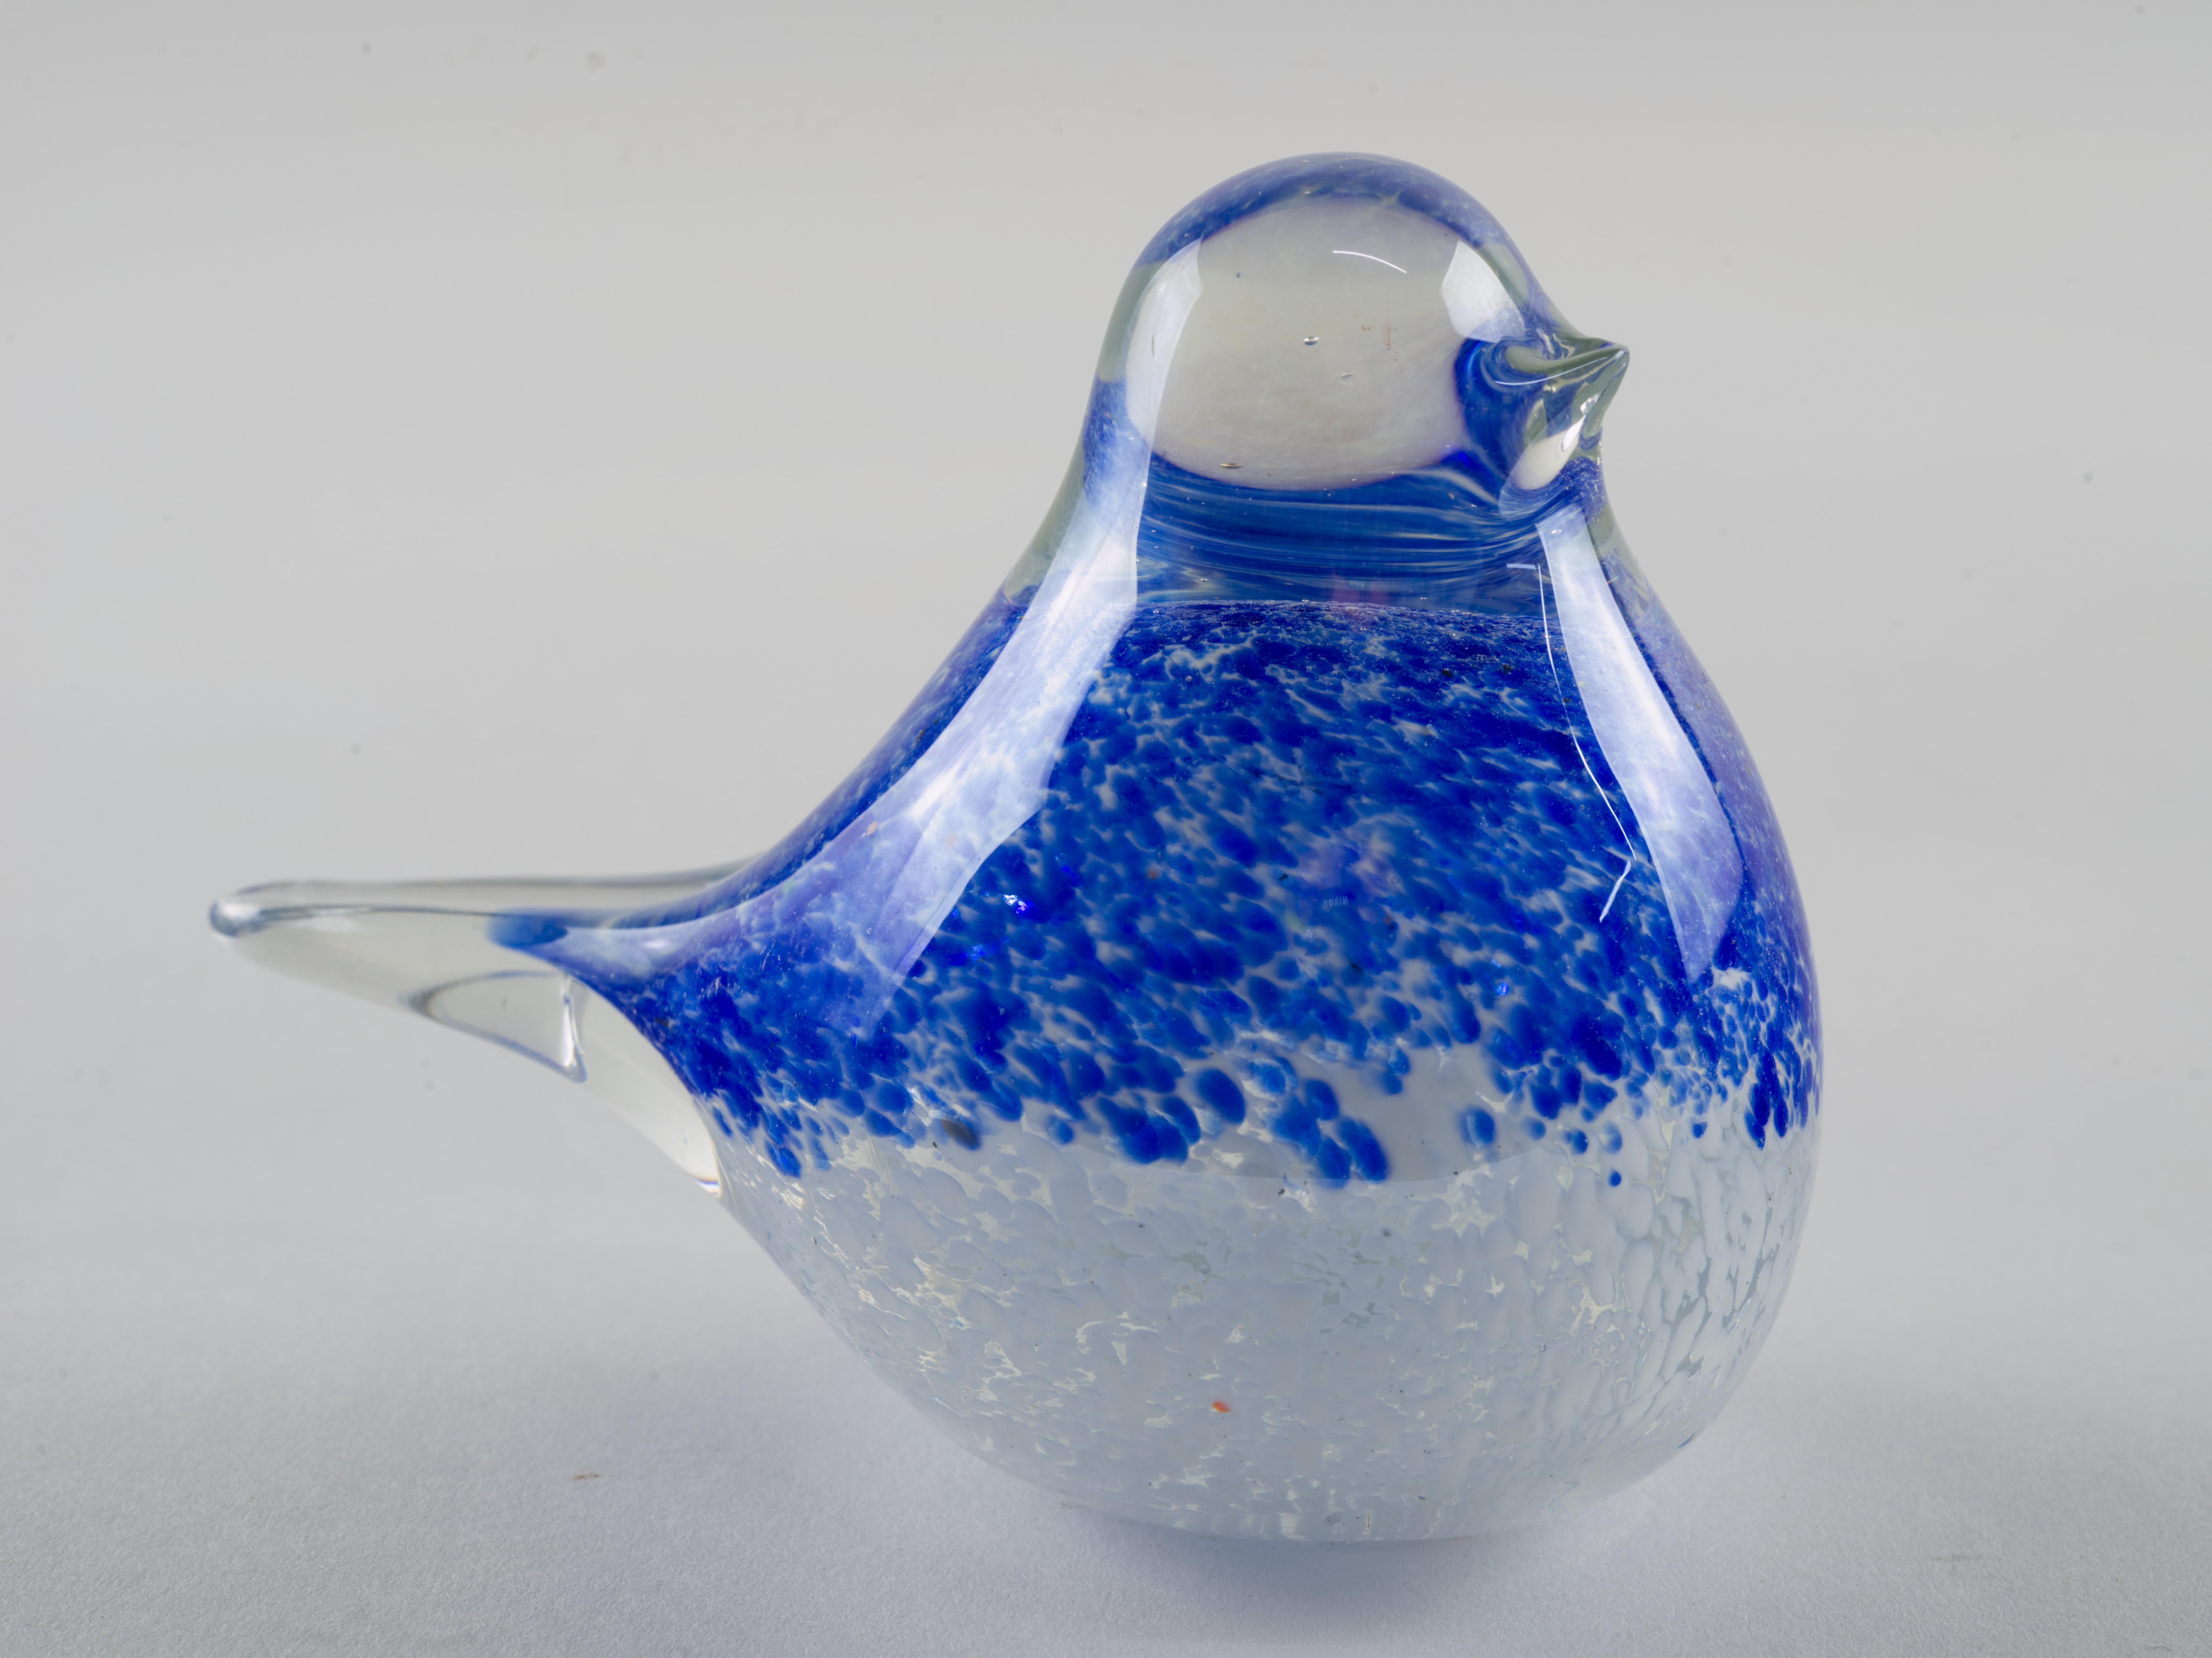  La figurine d'oiseau en verre d'art abstrait bleu a été soufflée à la main selon la technique sommerso, avec des assemblages de verre coloré moucheté de bleu et de blanc enfermés dans du verre transparent. La queue et le bec, minimaux et